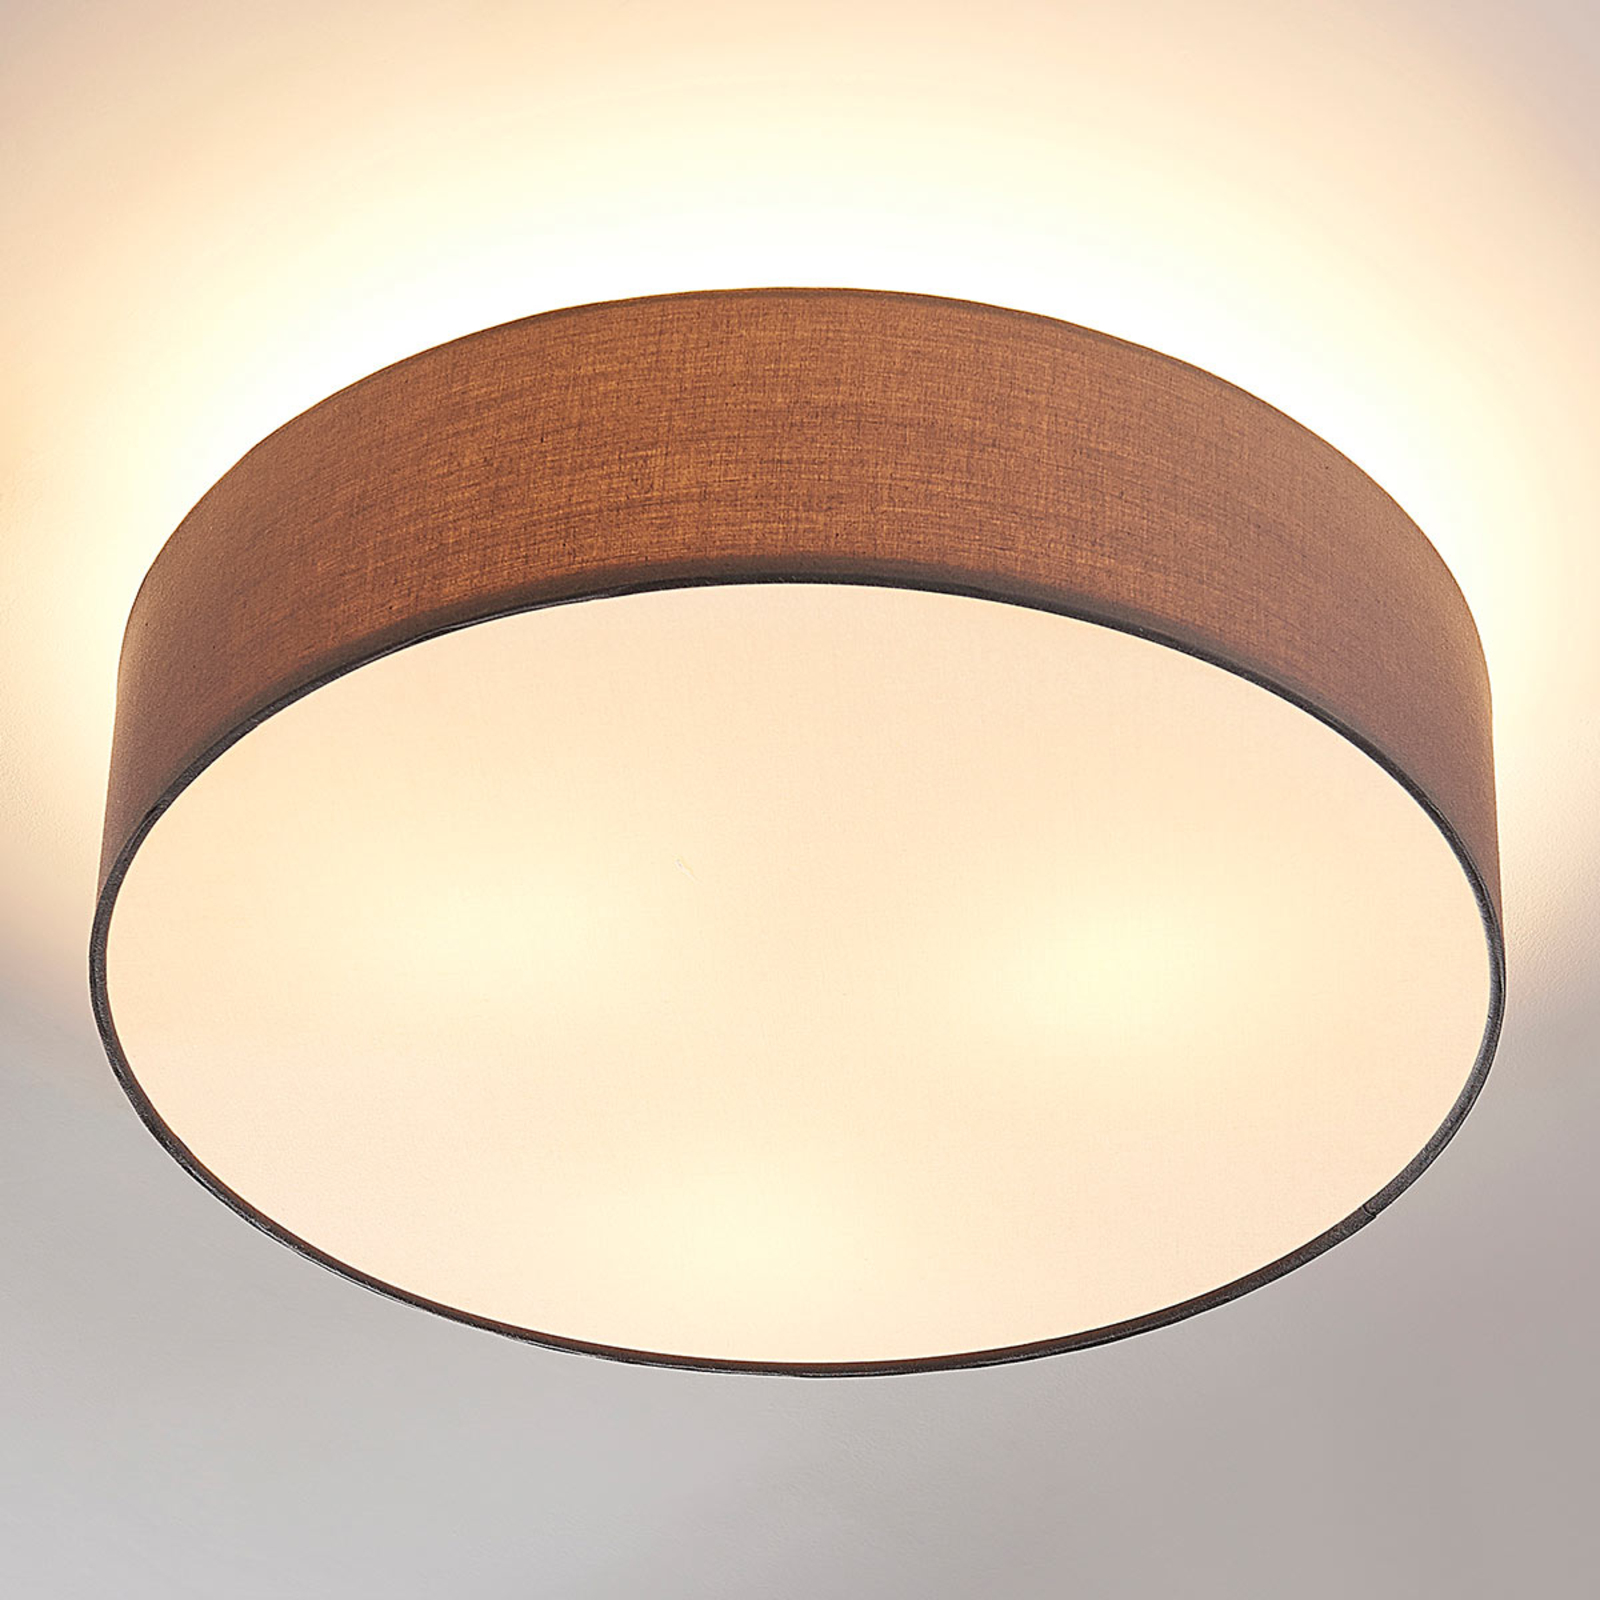 Sebatin ceiling light for E27, 50 cm, grey